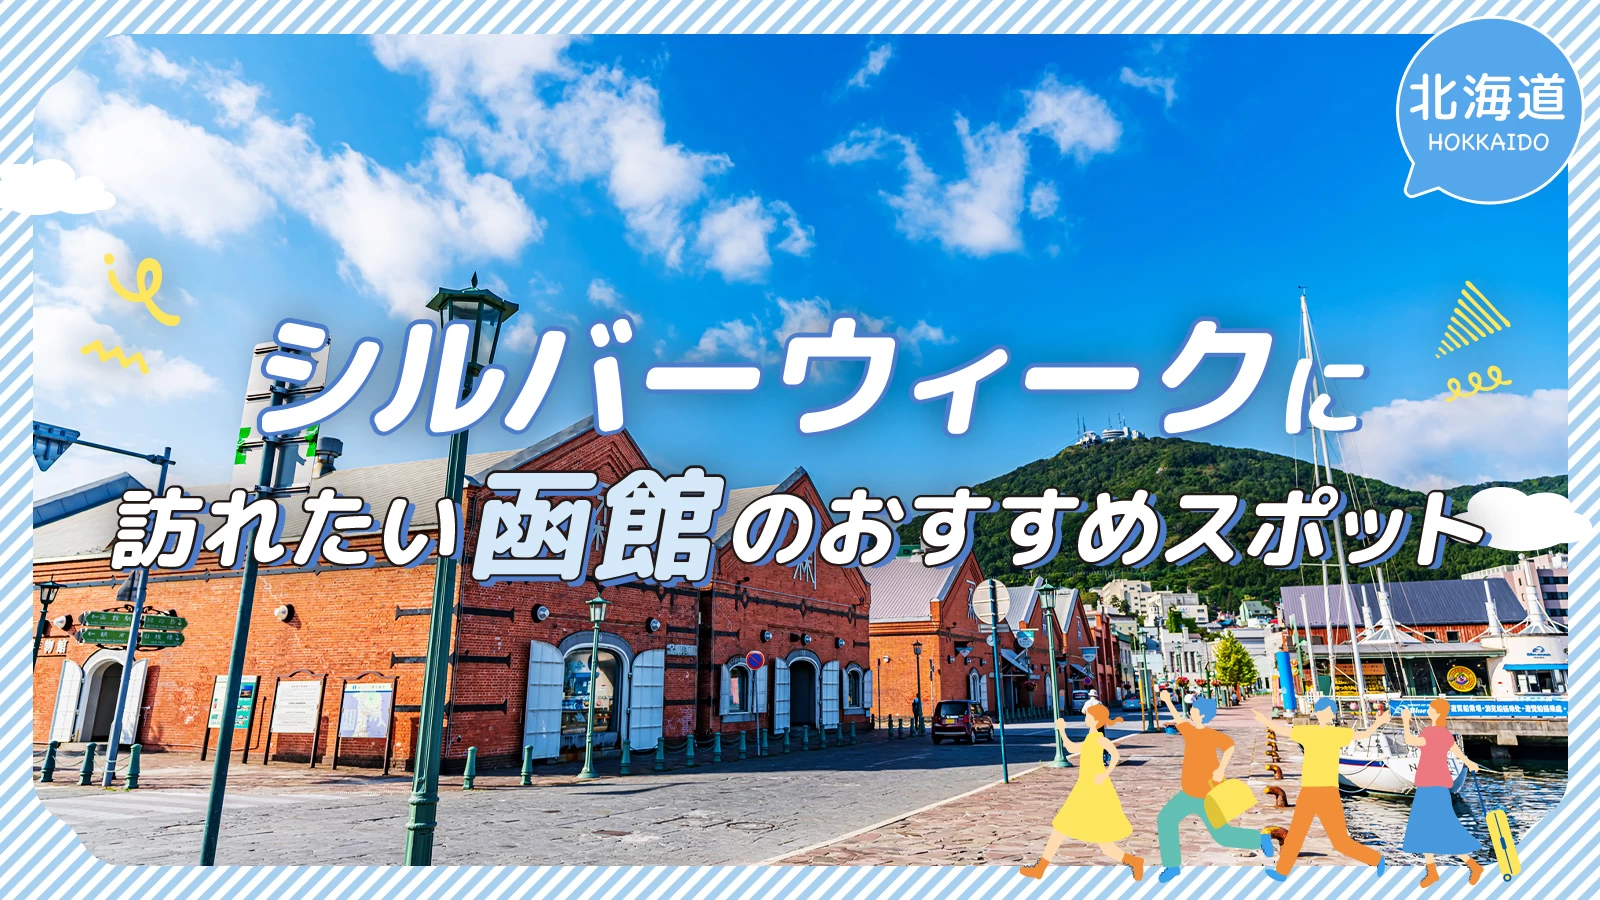 【北海道・観光情報】シルバーウィークに訪れたい函館のおすすめスポット17選